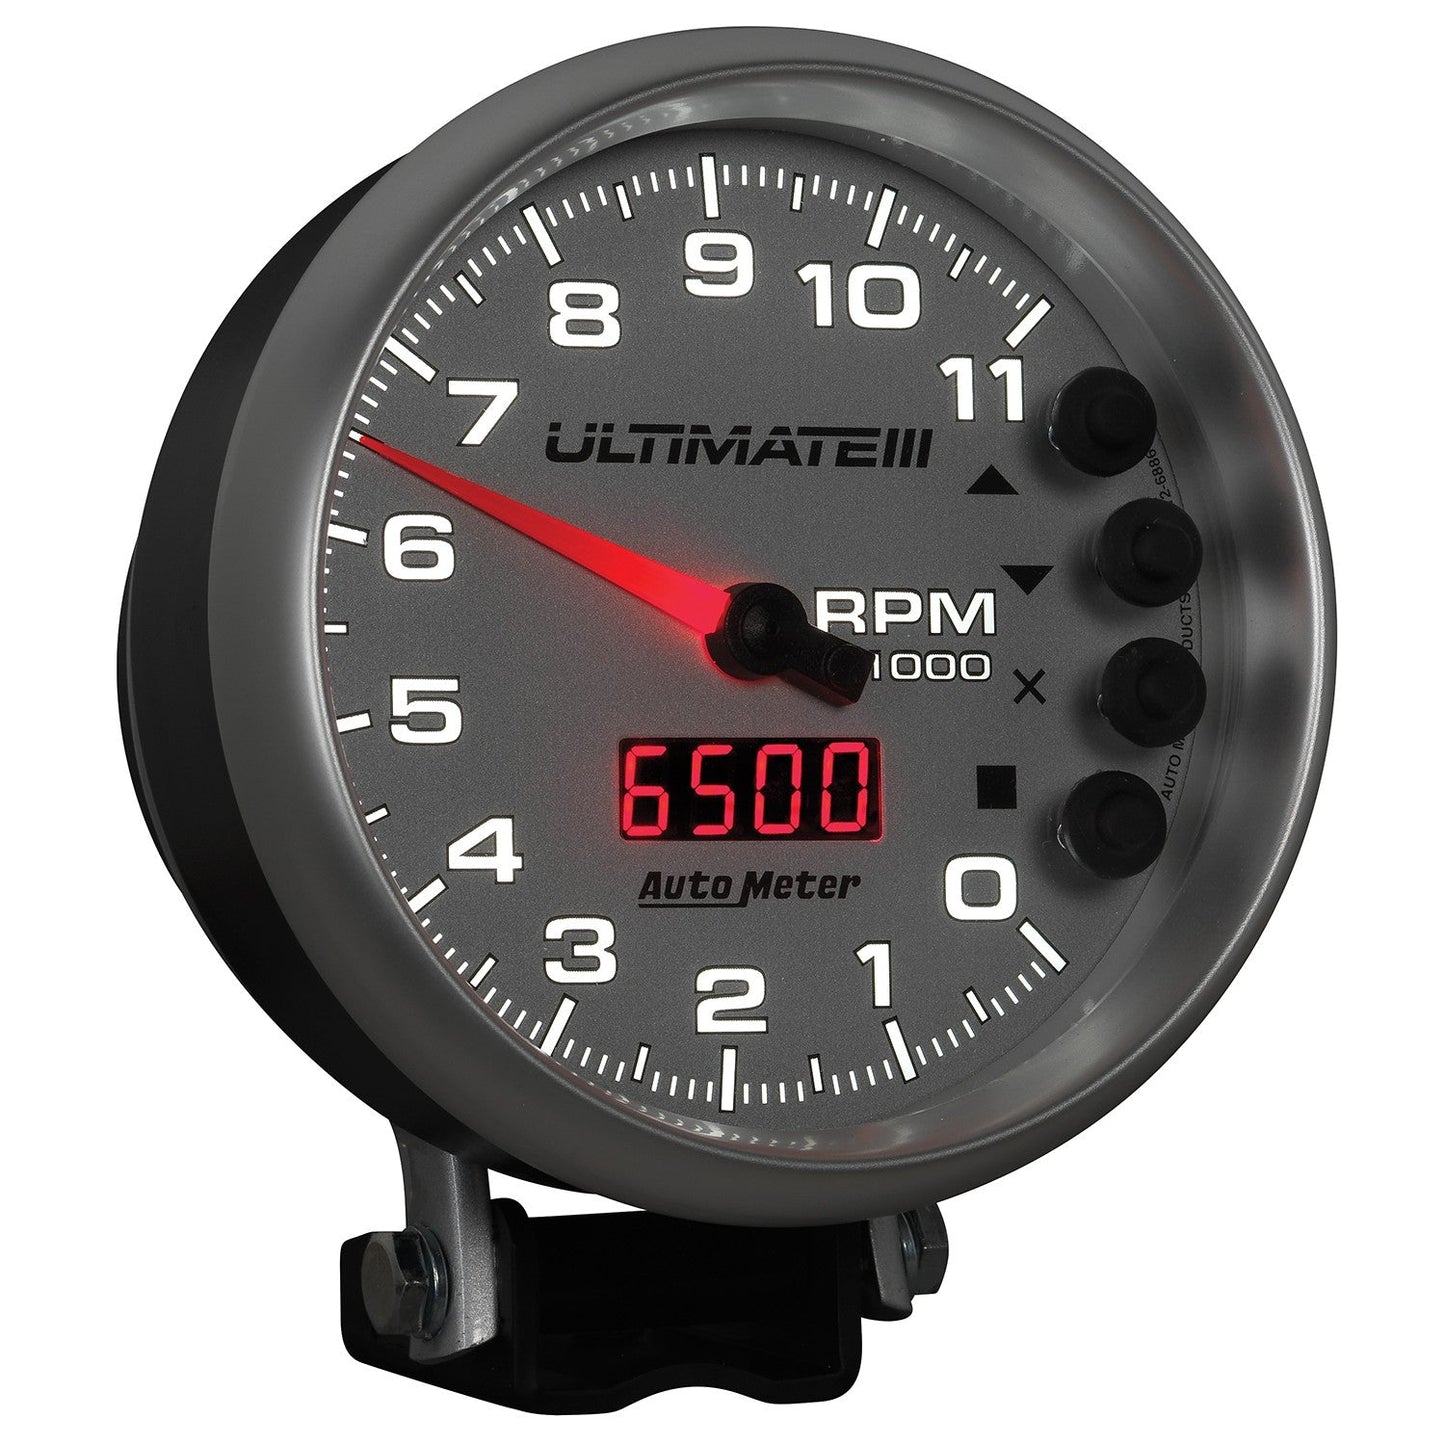 AutoMeter - TACÔMETRO DE 5", 0-11.000 RPM, PEDESTAL, REPRODUÇÃO ULTIMATE III, PRATA (6886)